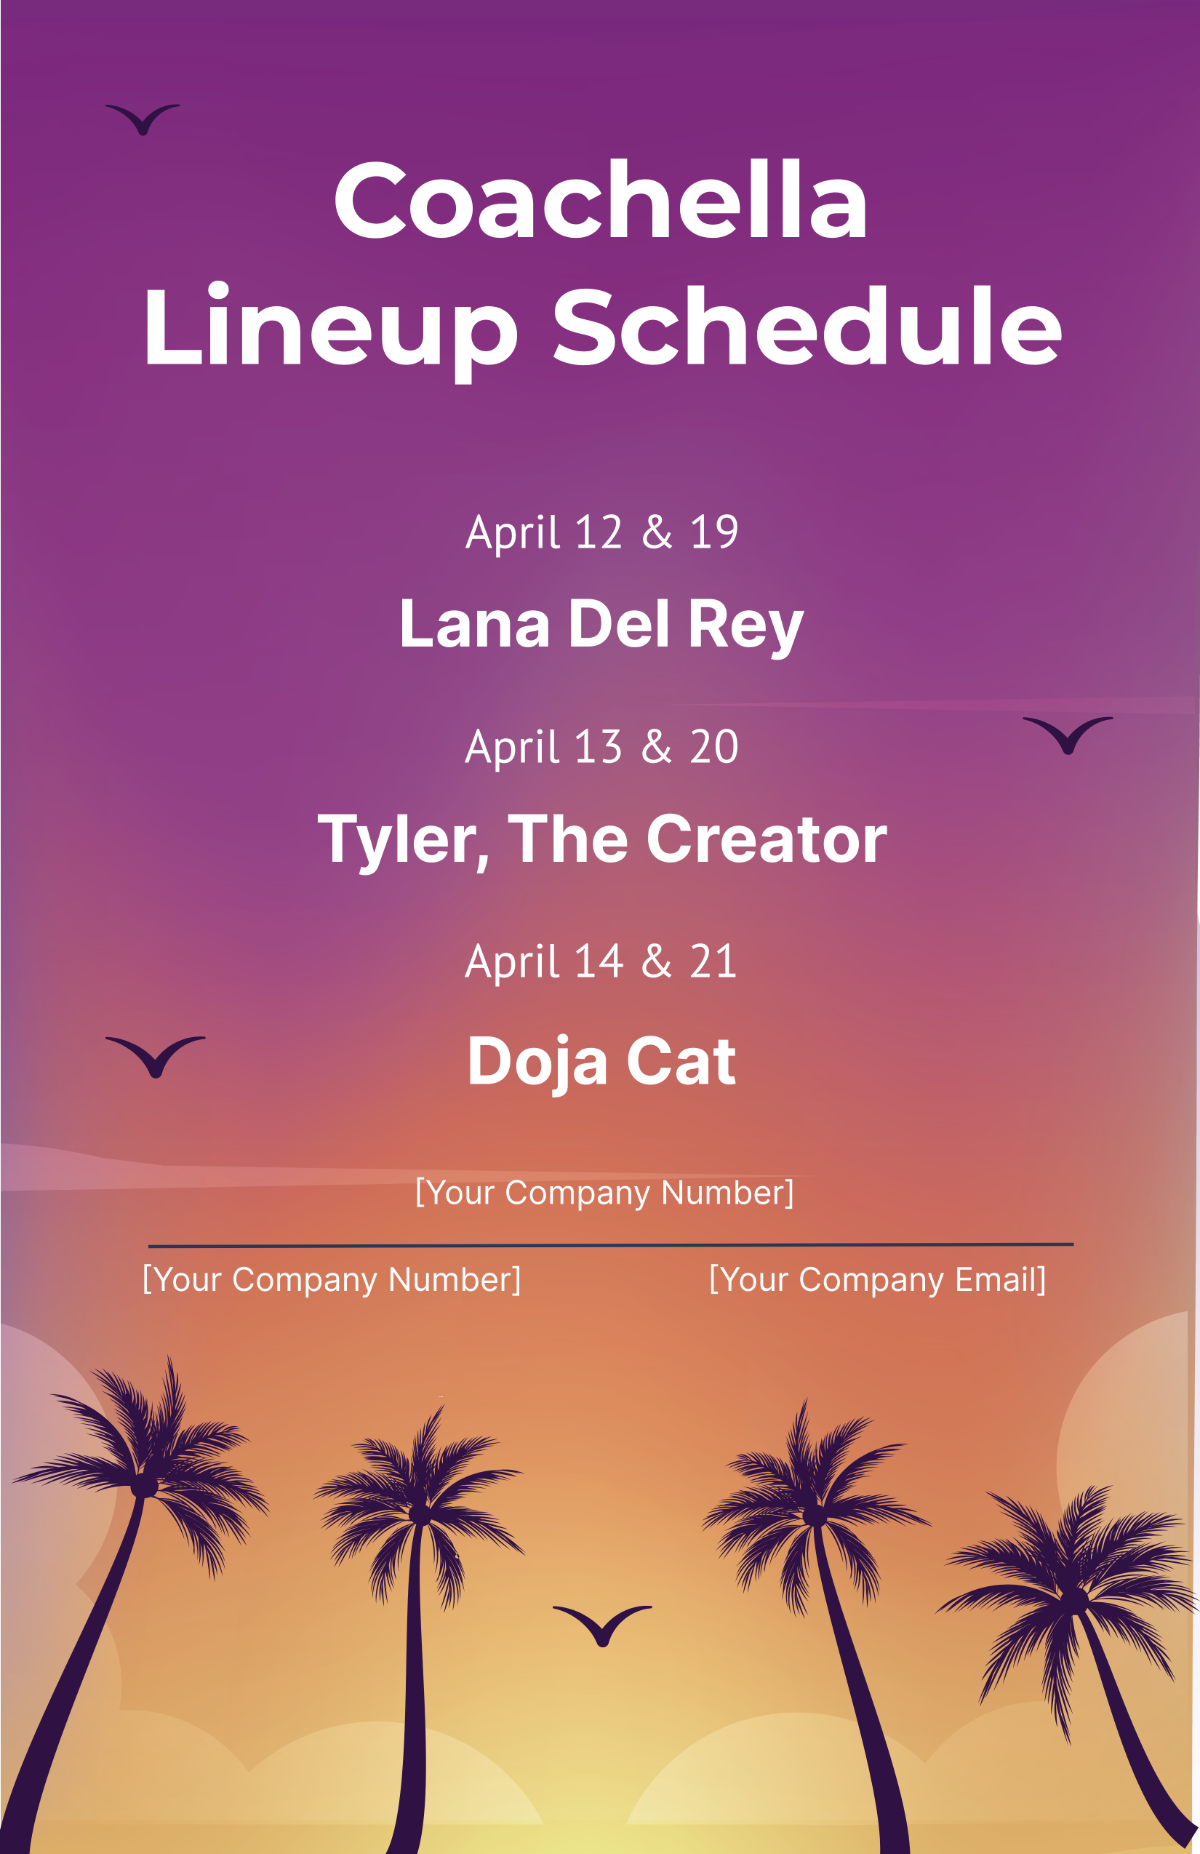 Coachella Lineup Schedule Template